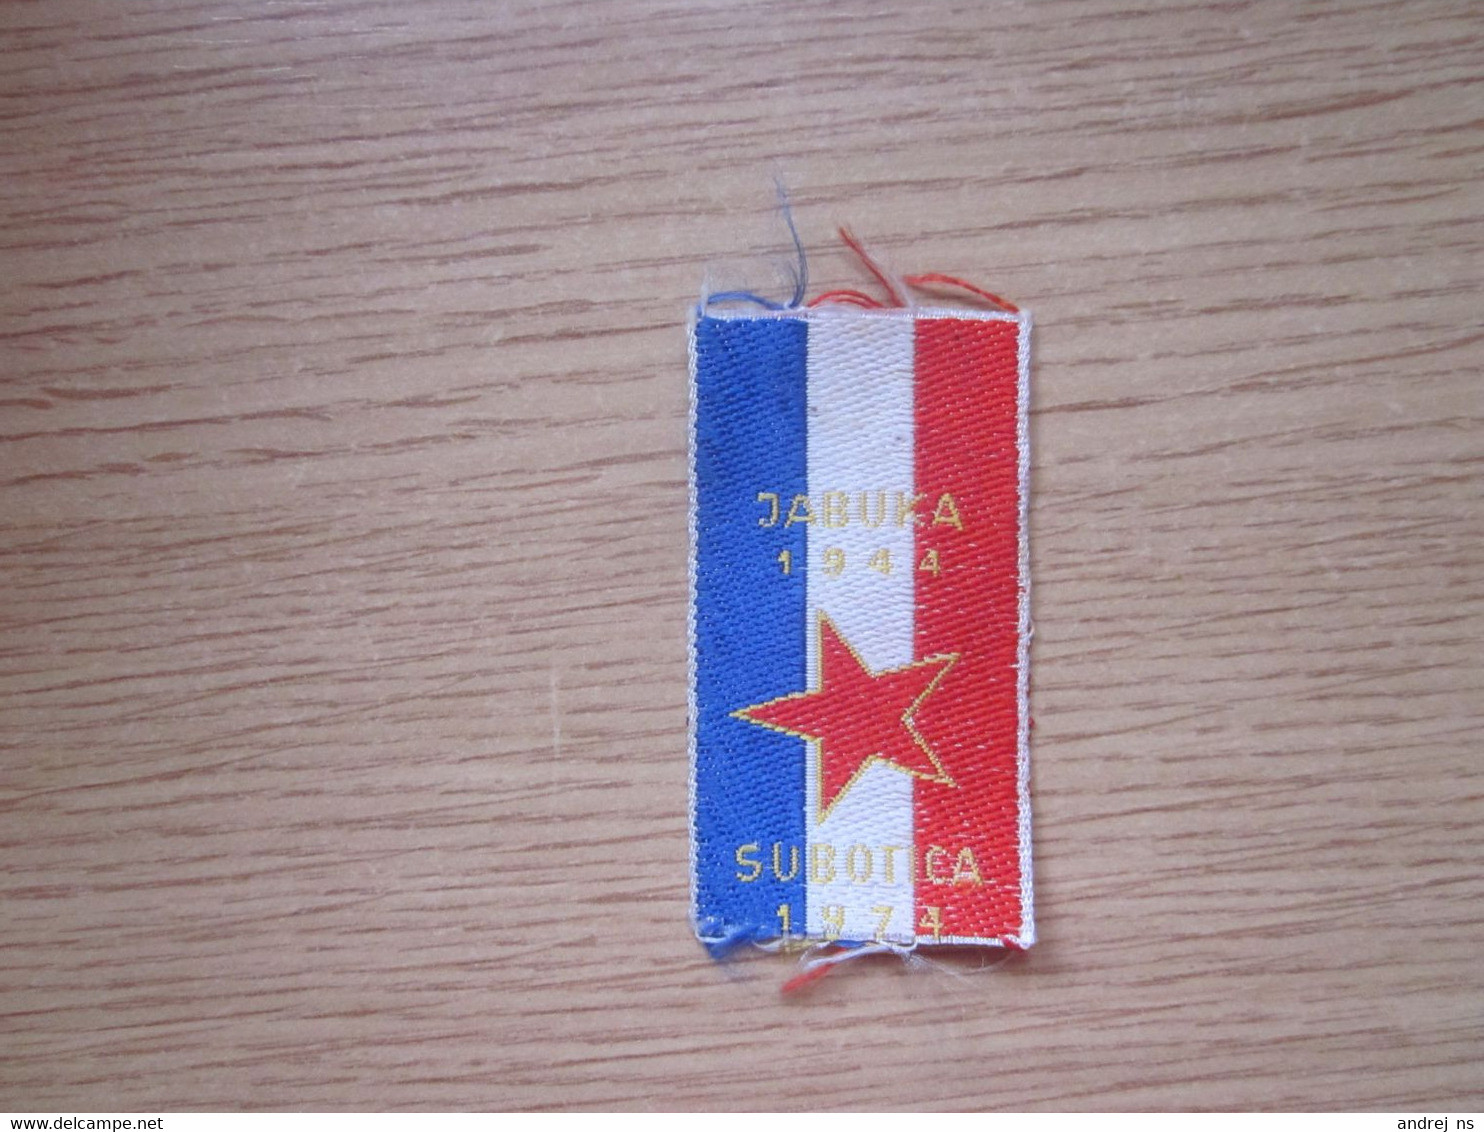 Small Flag Of Yugoslavia Jabuka 1944 Subotica 1974 3.2x5.5 Cm - Flaggen